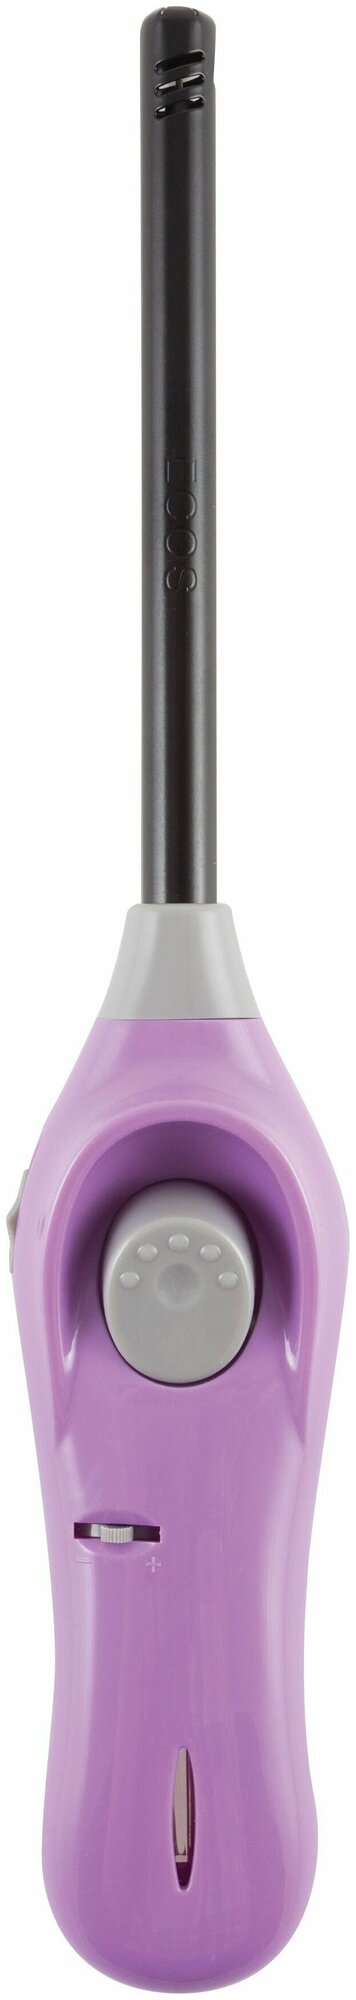 Зажигалка газовая Ecos GL-001V цвет фиолетовый